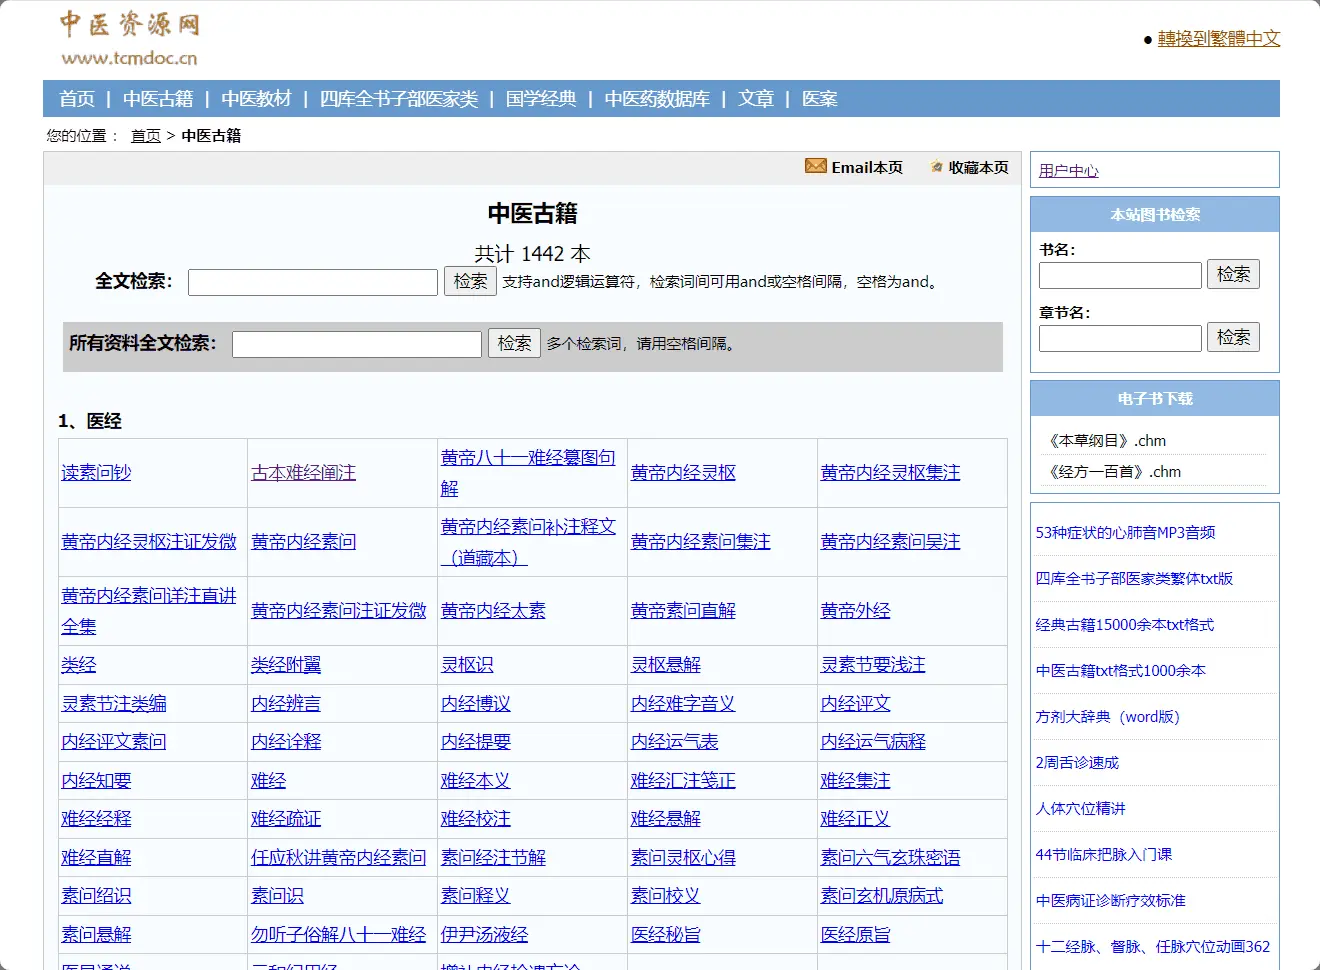 中医资源网：专注于中医领域的在线平台